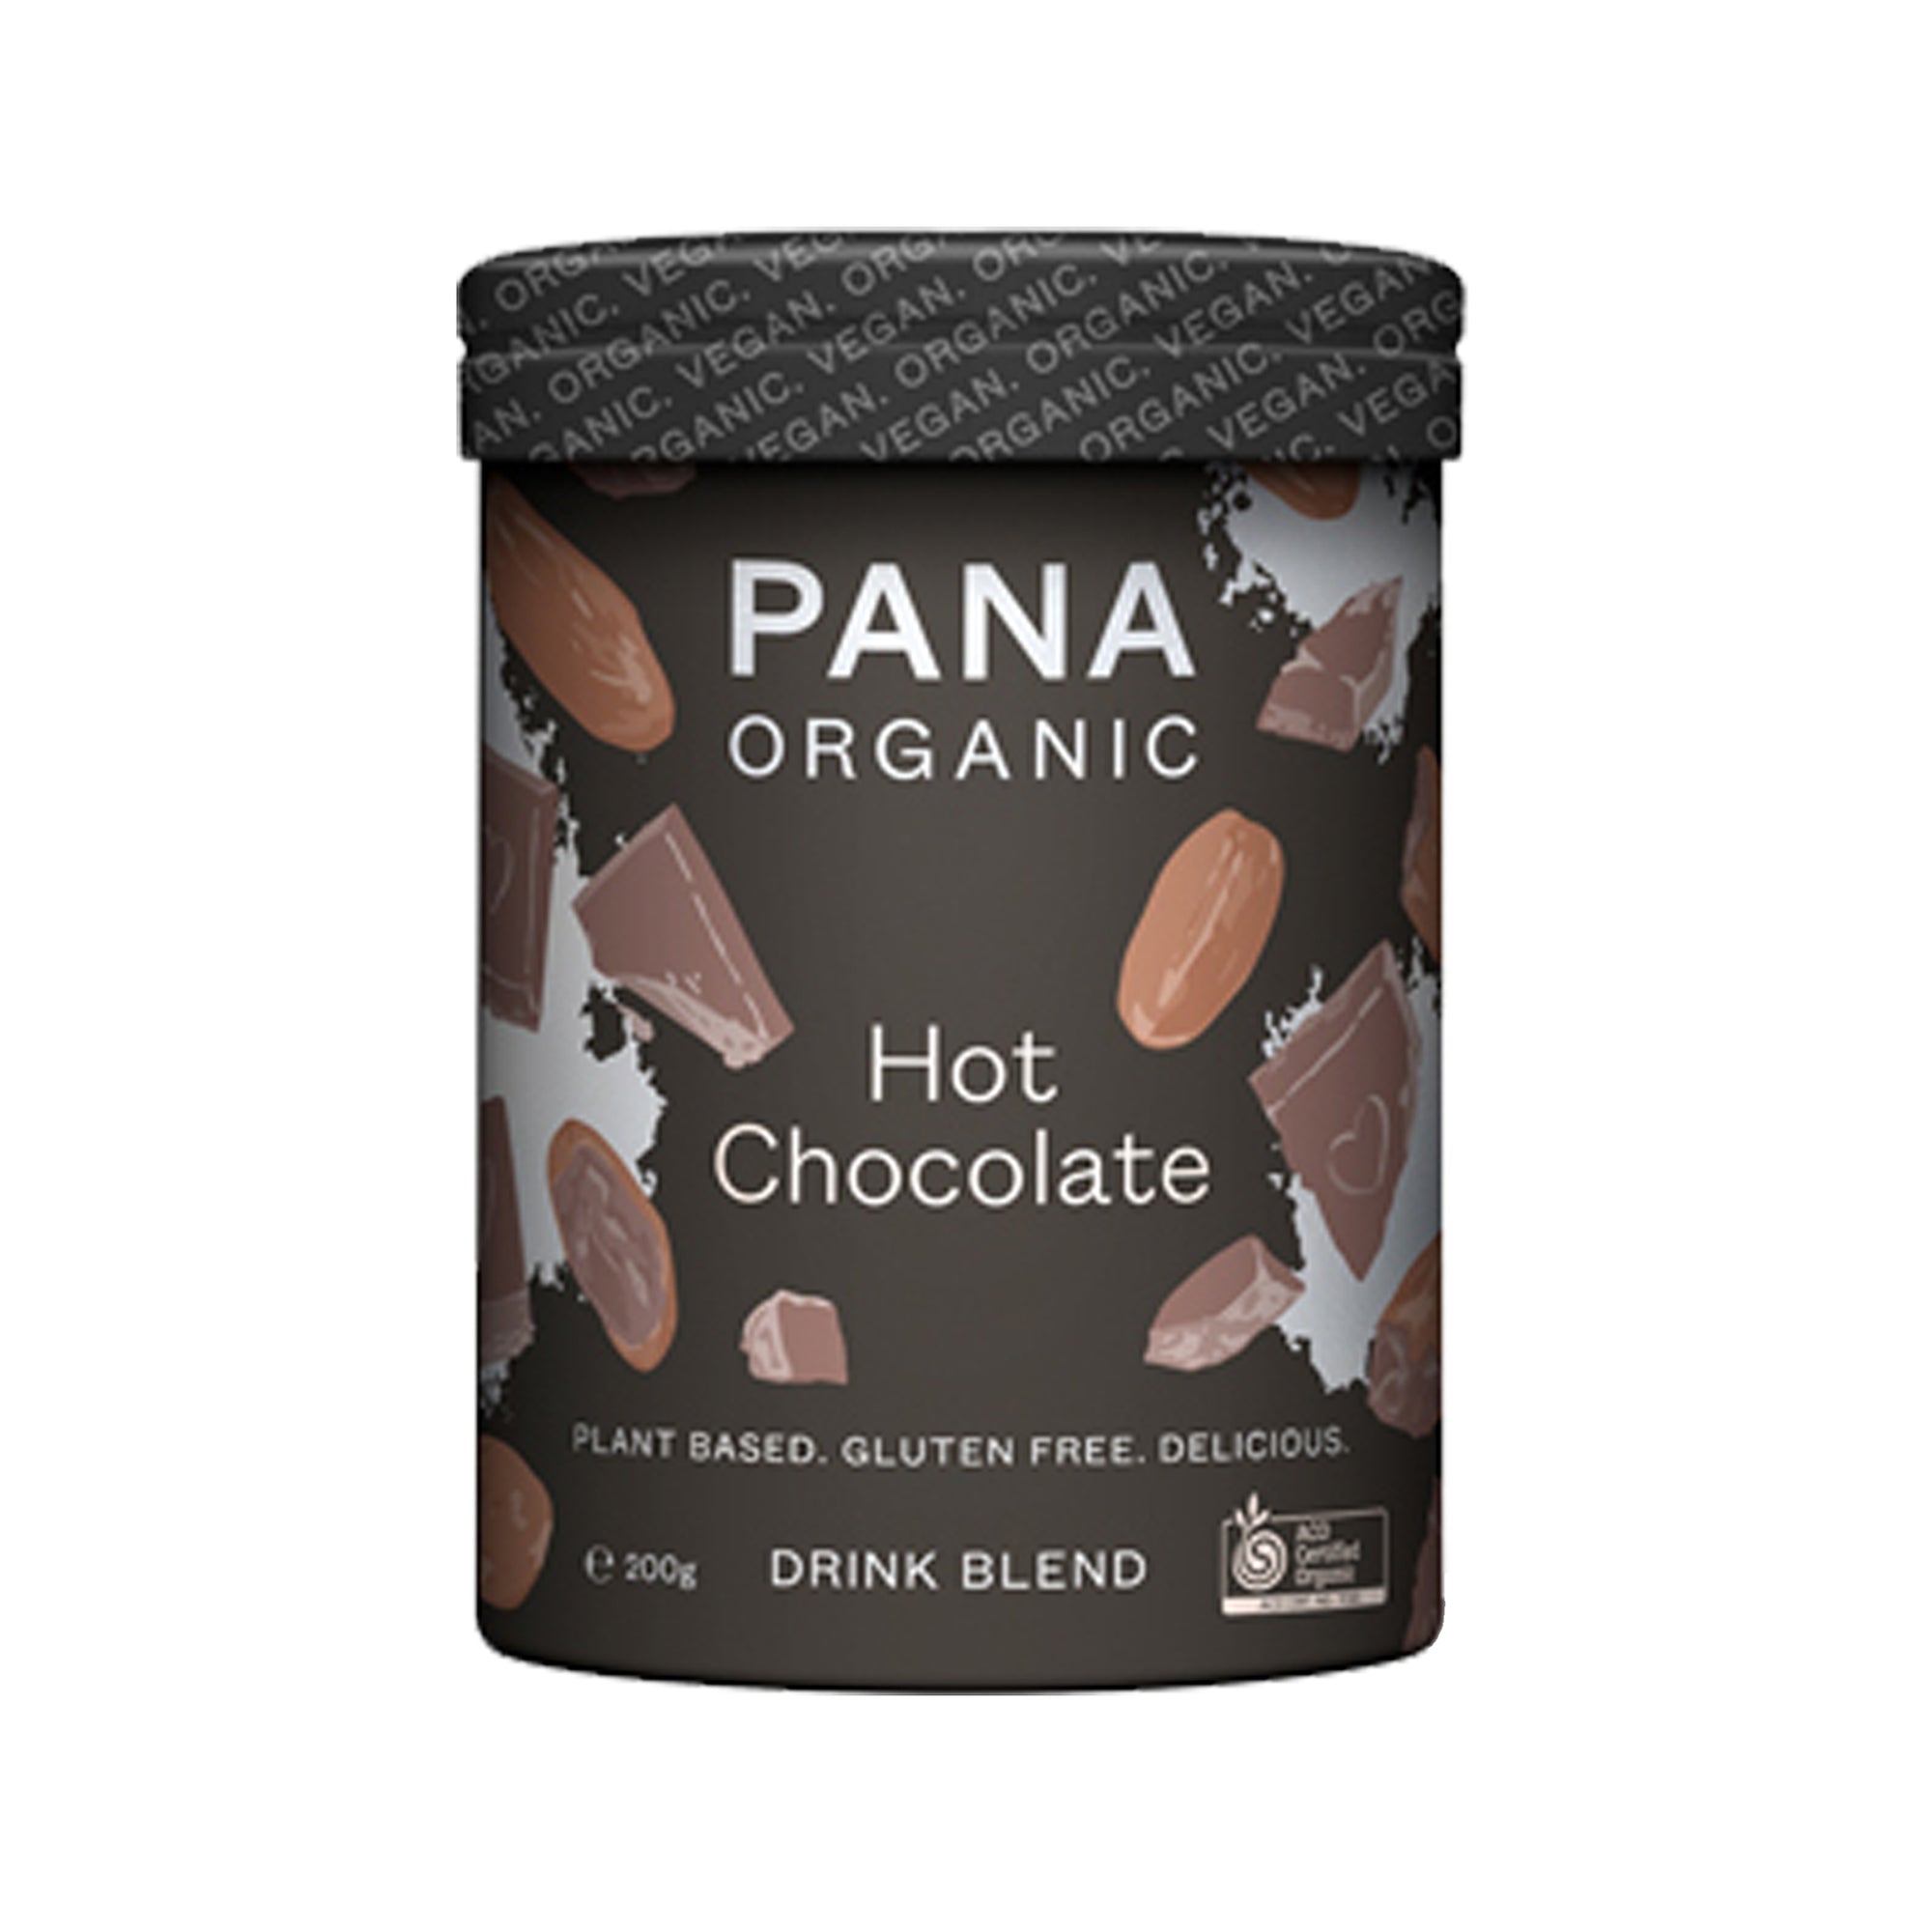 Pana - Hot Chocolate - 200g